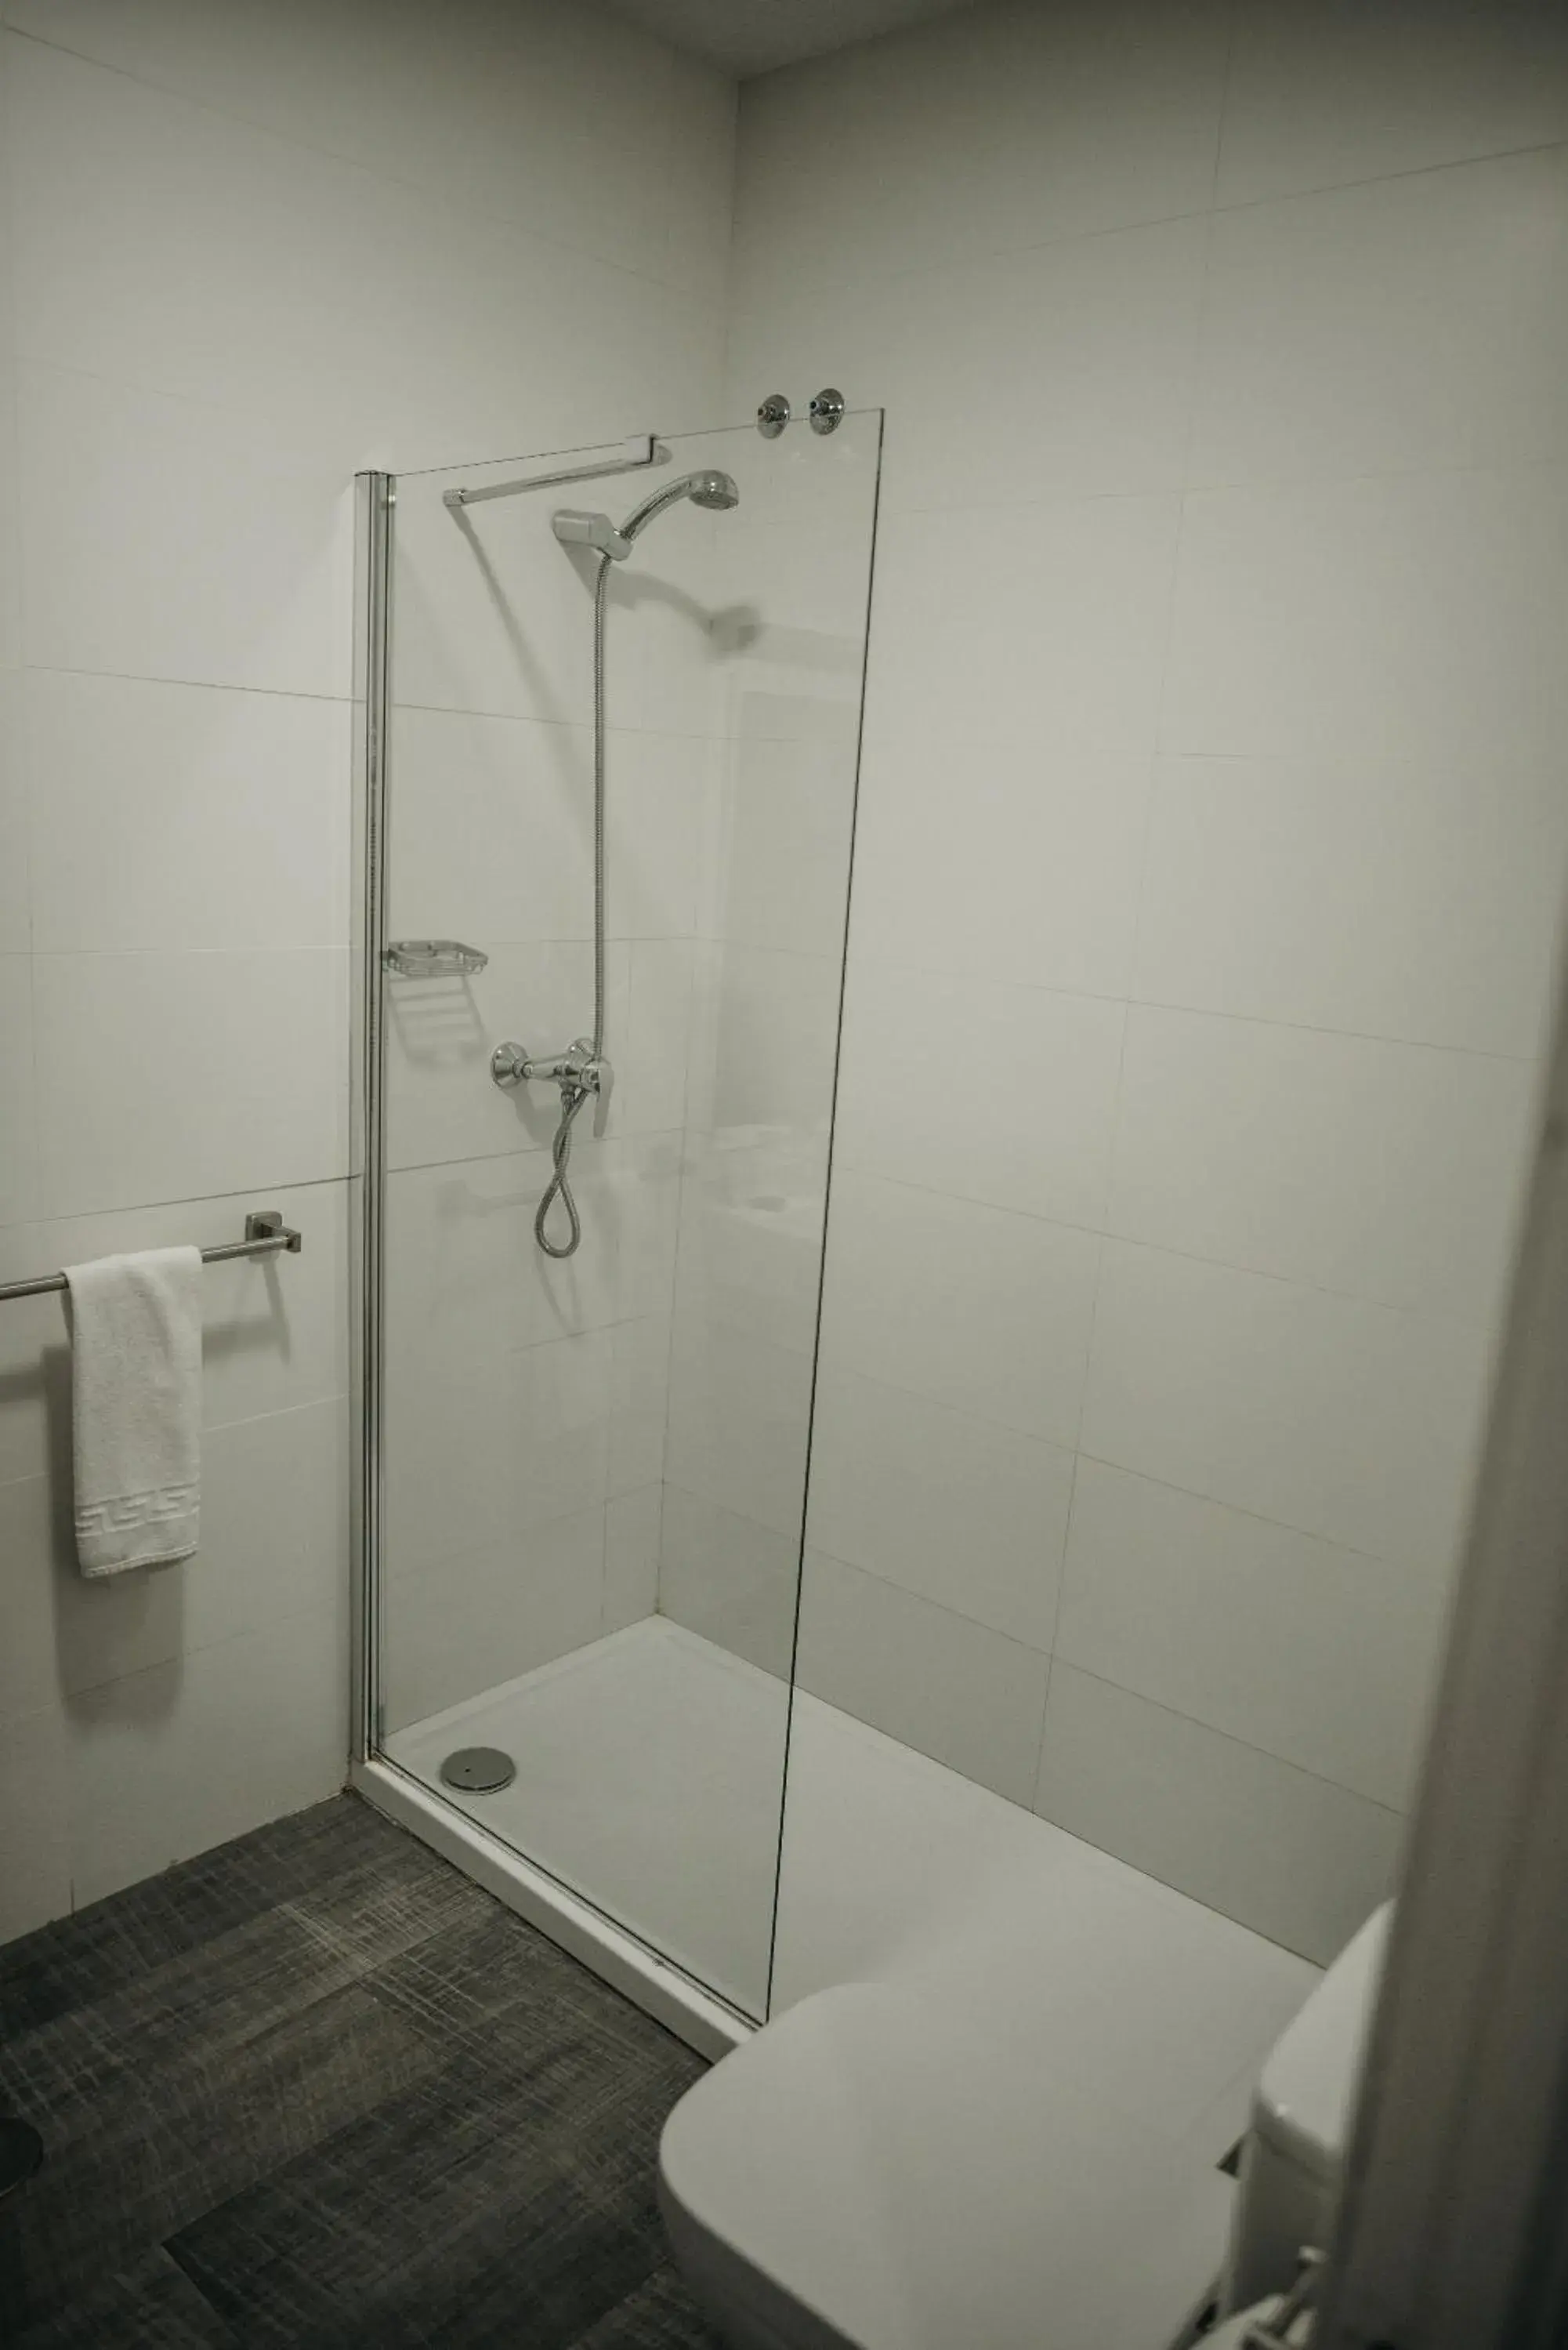 Bathroom in Hotel Nuro